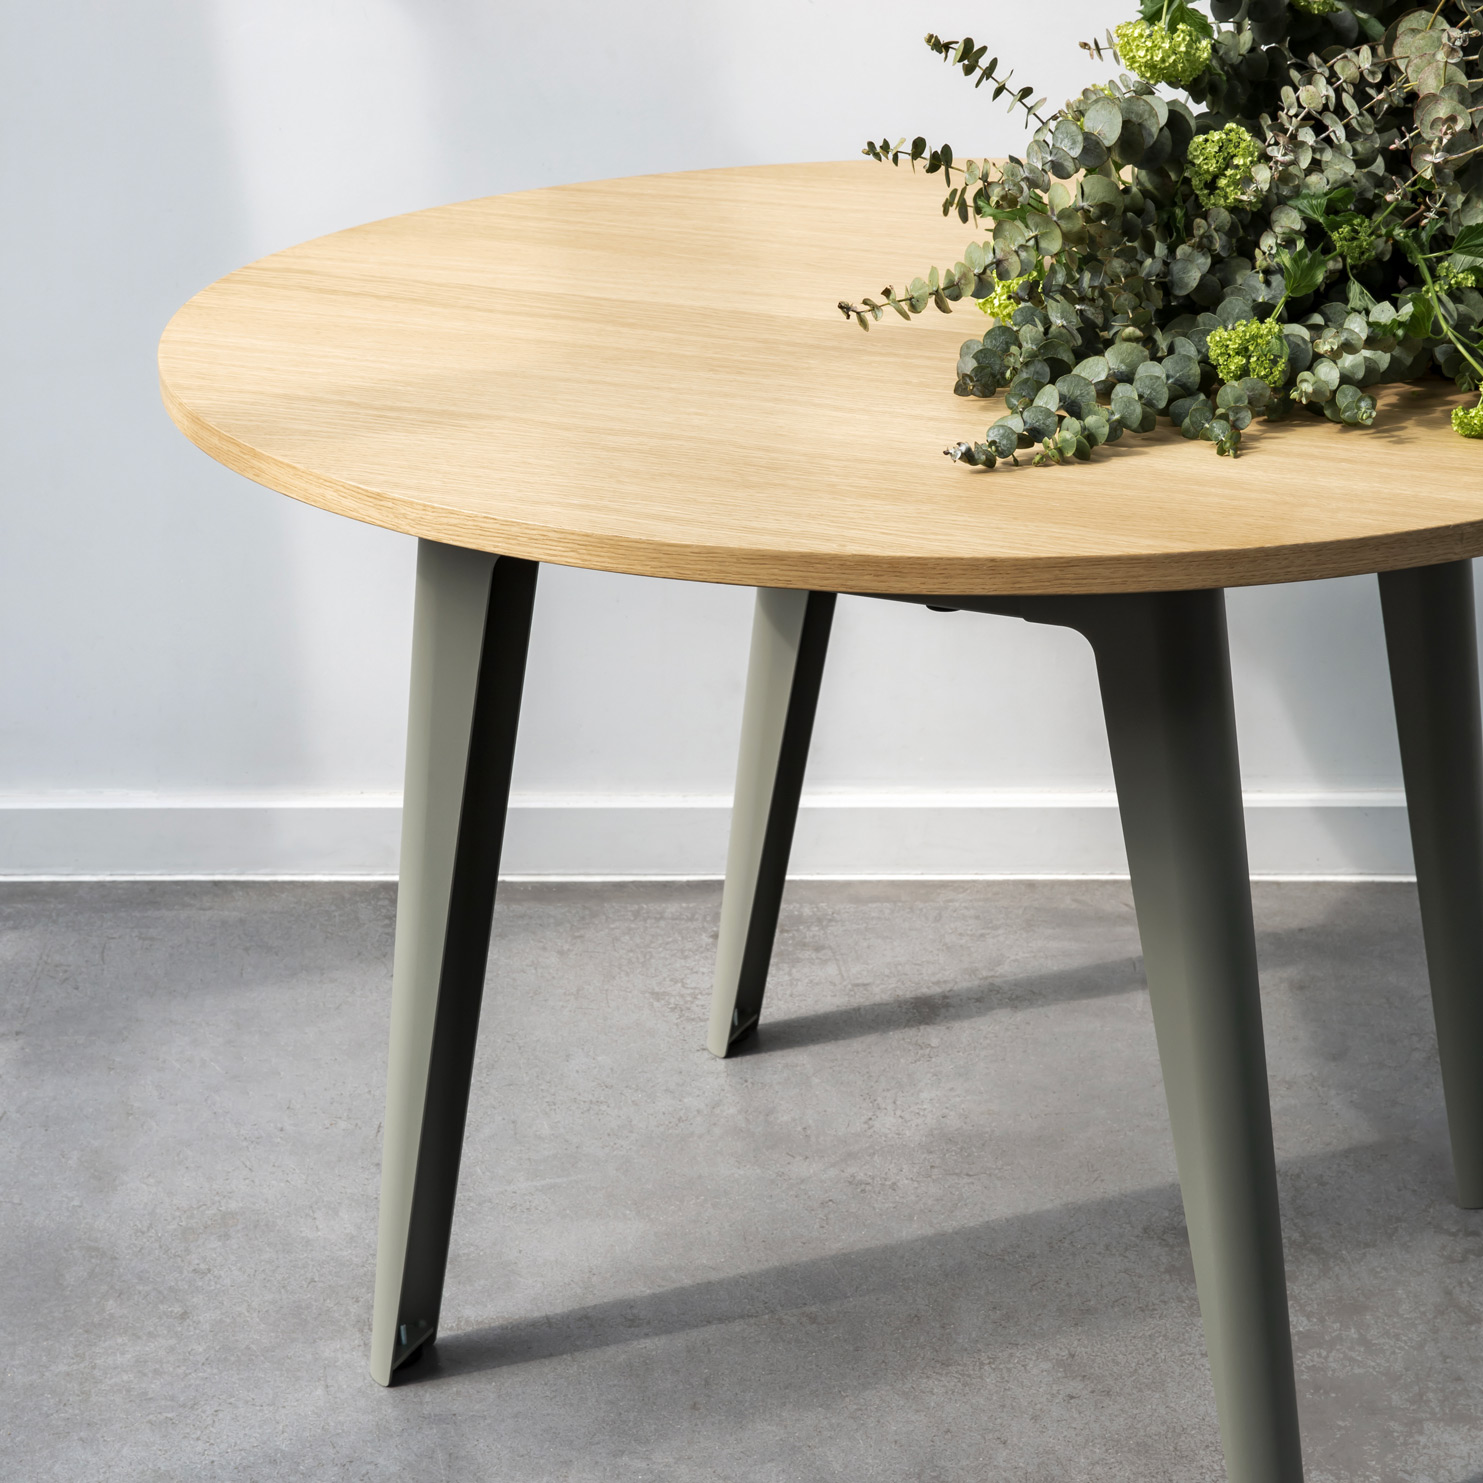 Runder Tisch NEW MODERN - ökozertifiziertes Holz